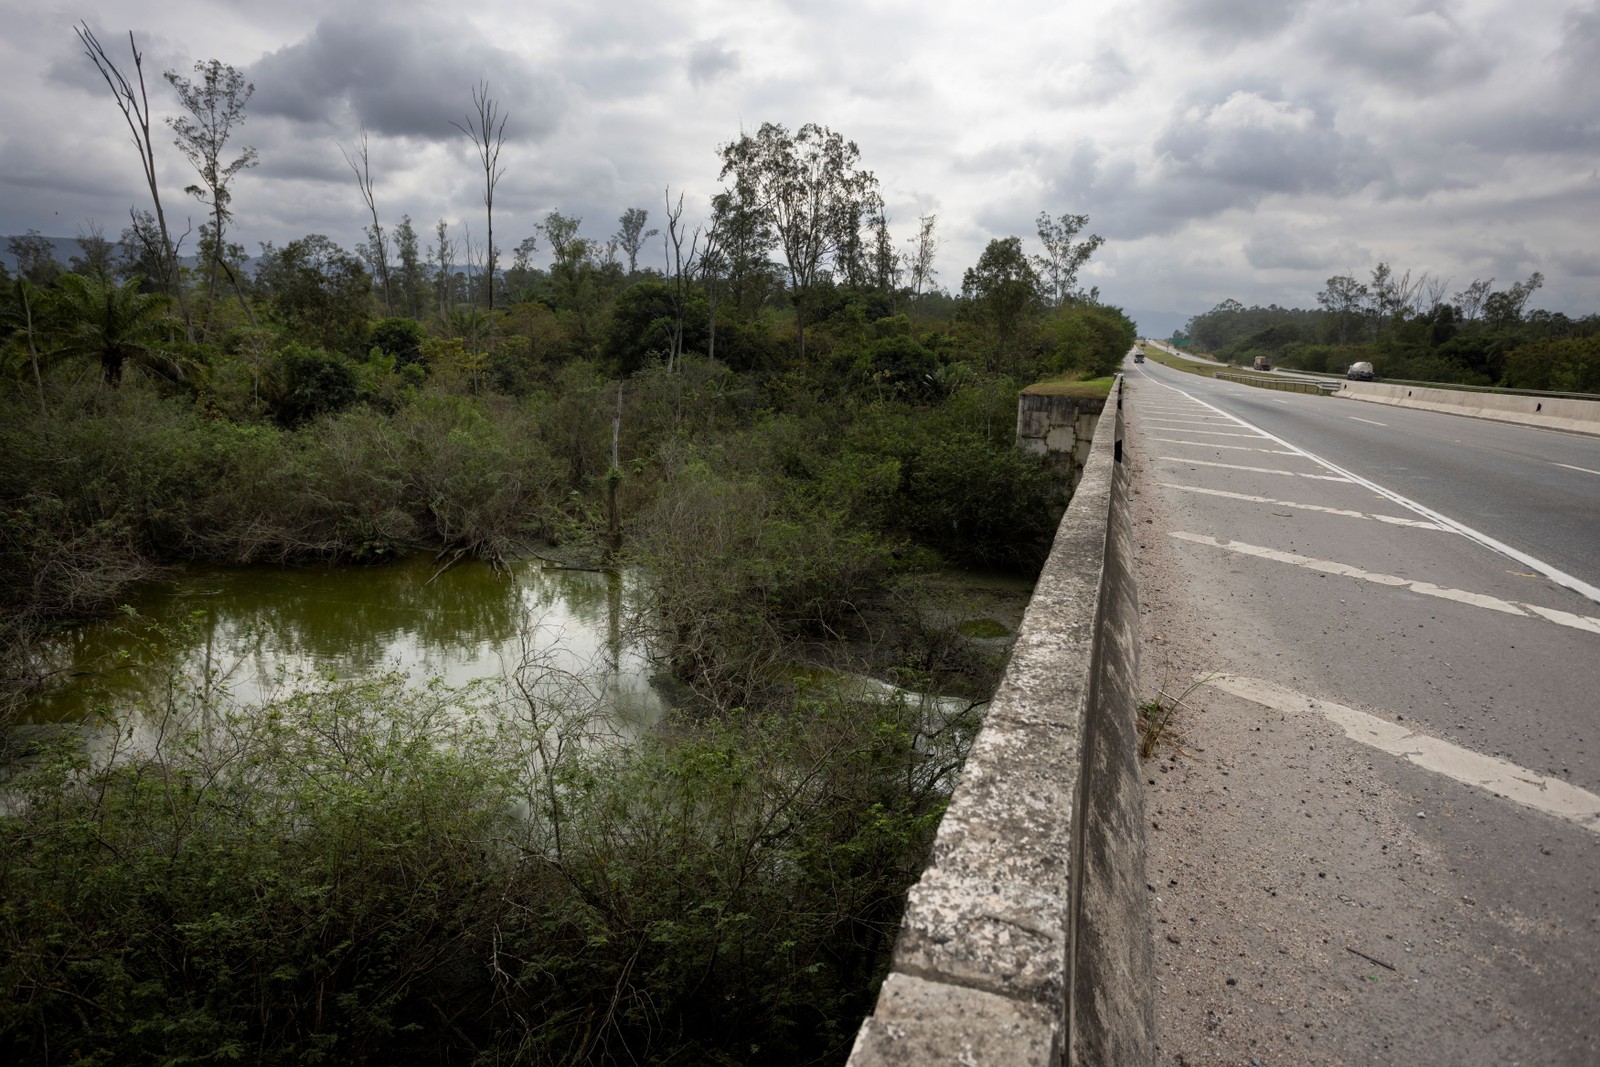 Área no KM 98 (Seropédica) em que foi preciso erguer um viaduto para preservar as pererecas — Foto: Márcia Foletto / Agência O Globo